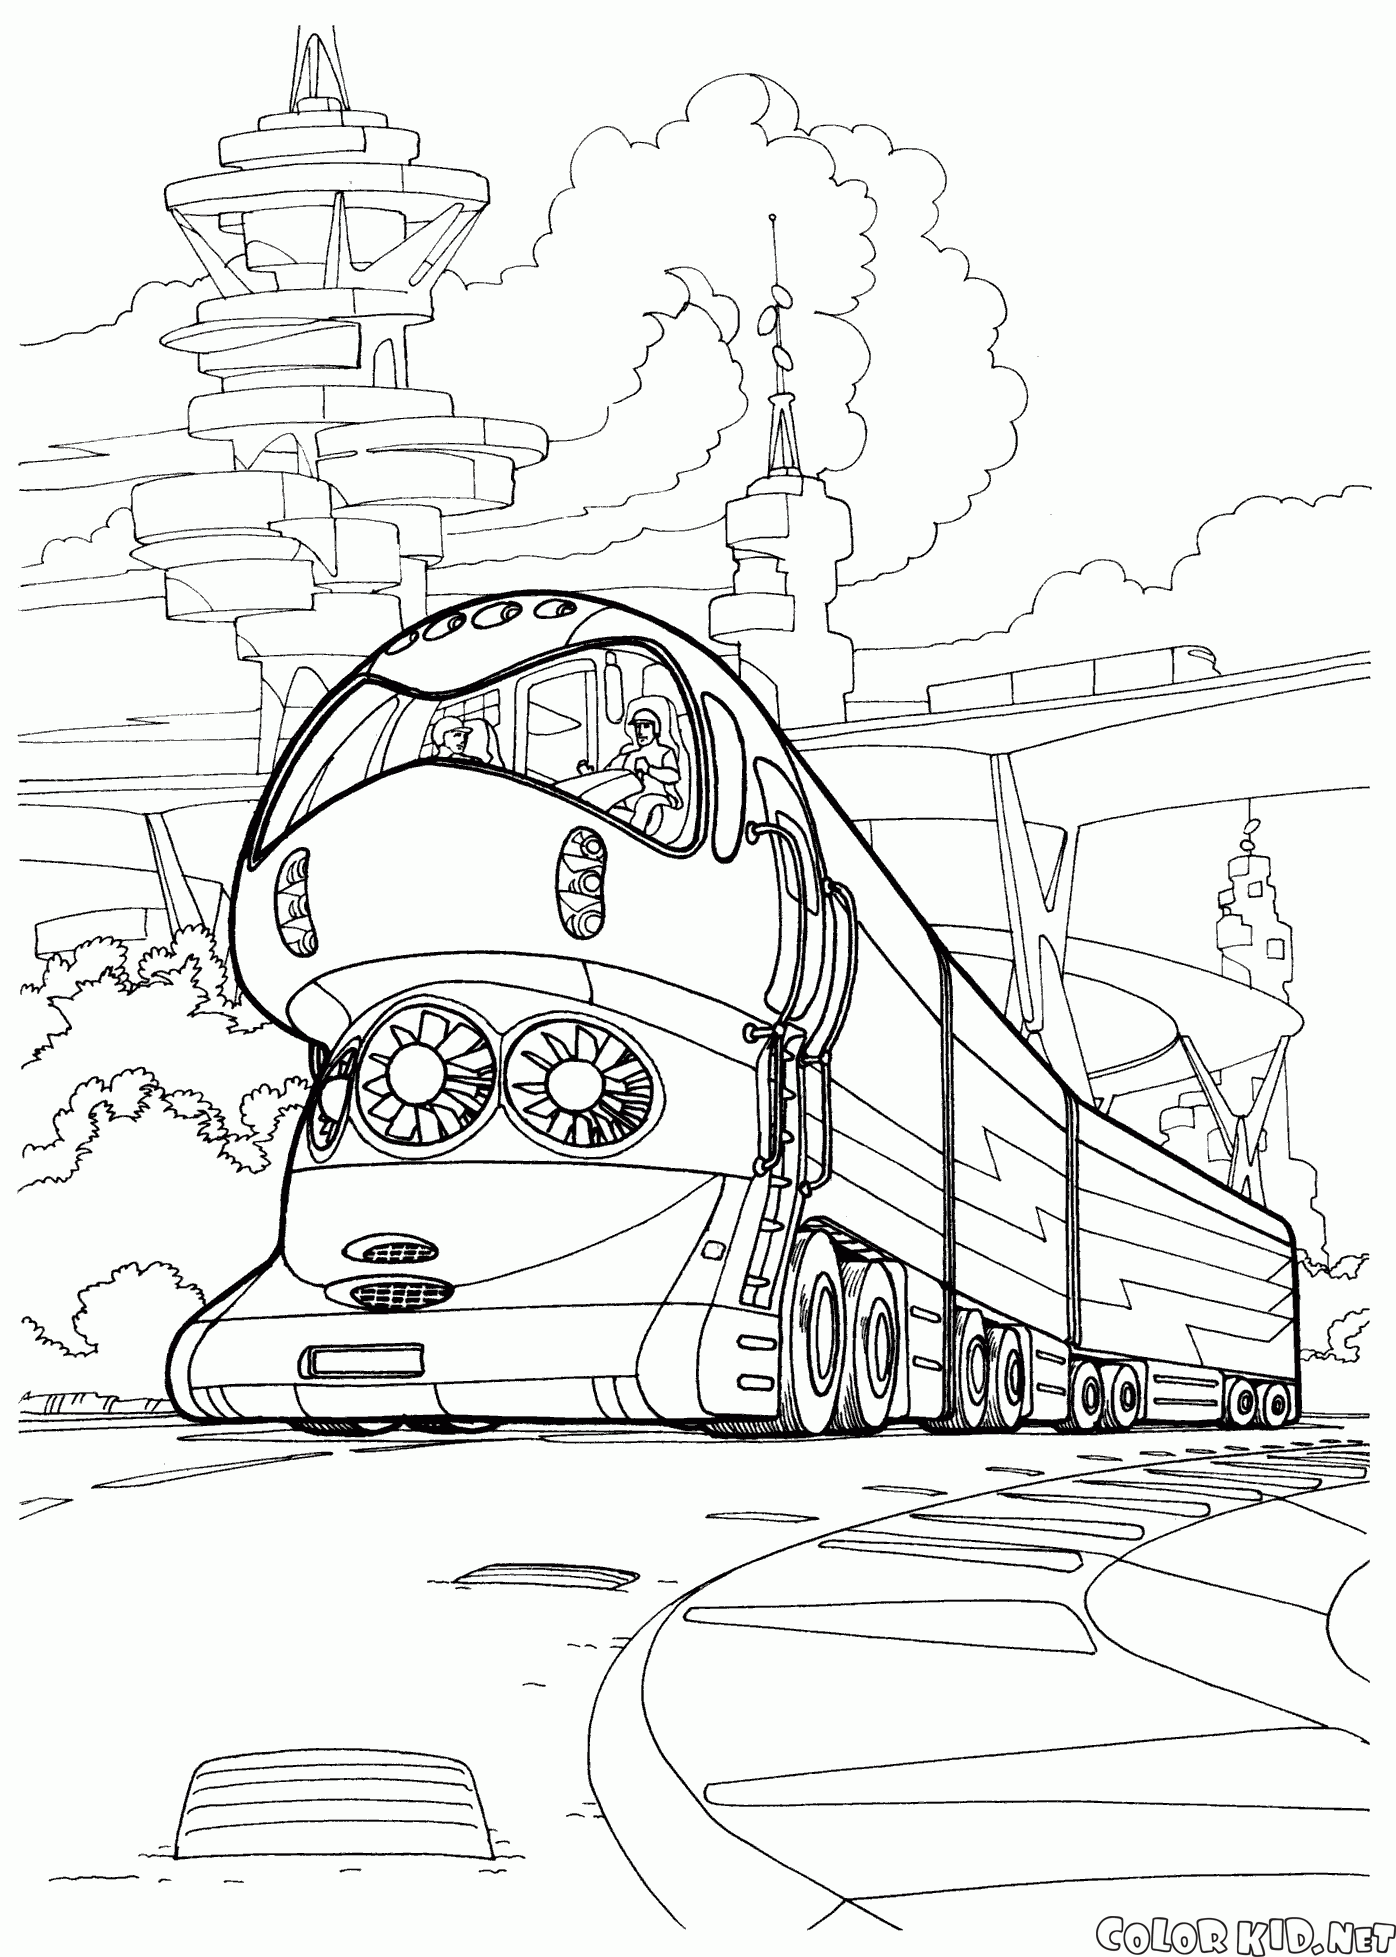 The high-tech train